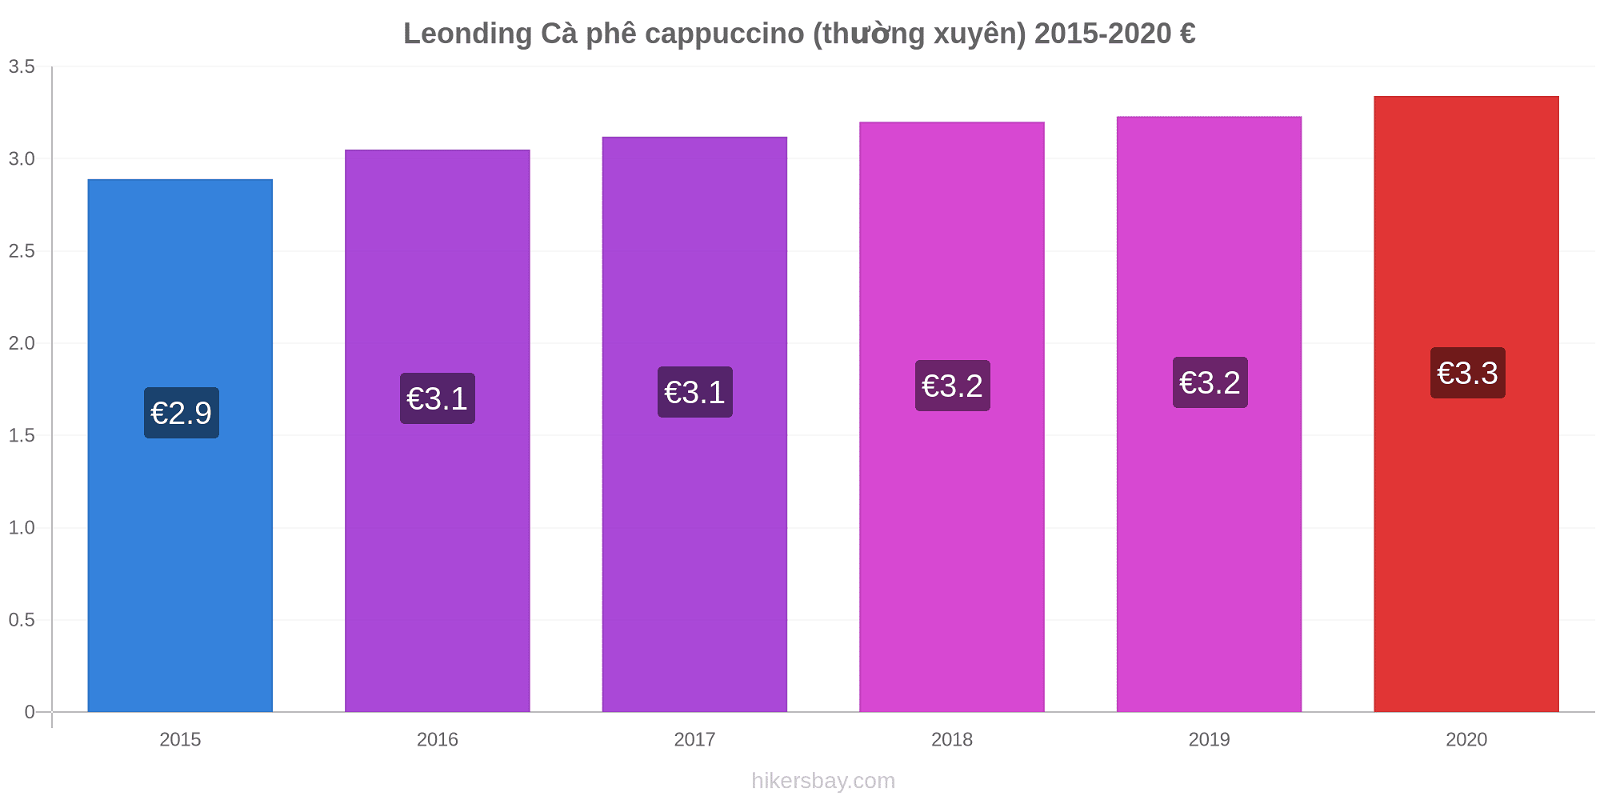 Leonding thay đổi giá Cà phê cappuccino (thường xuyên) hikersbay.com